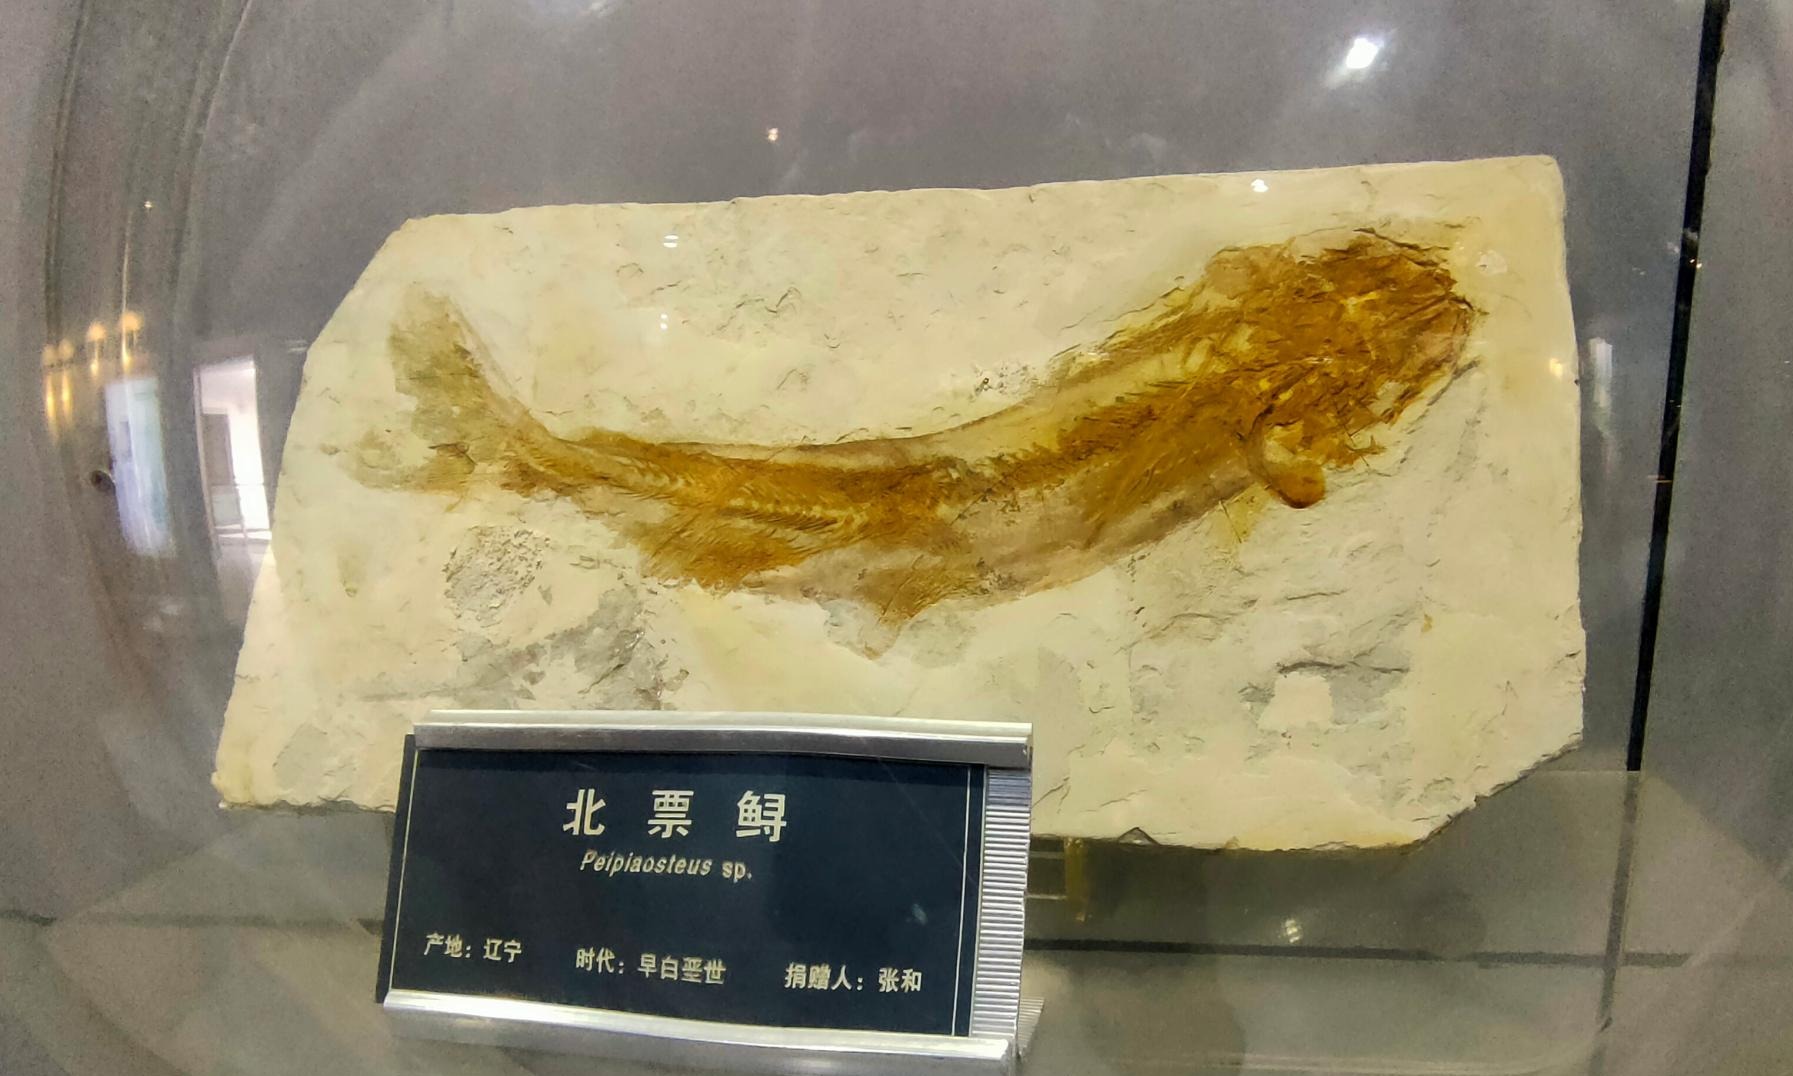 千姿百态的古鱼，自远古一路游来-中国地质大学图书档案与文博部